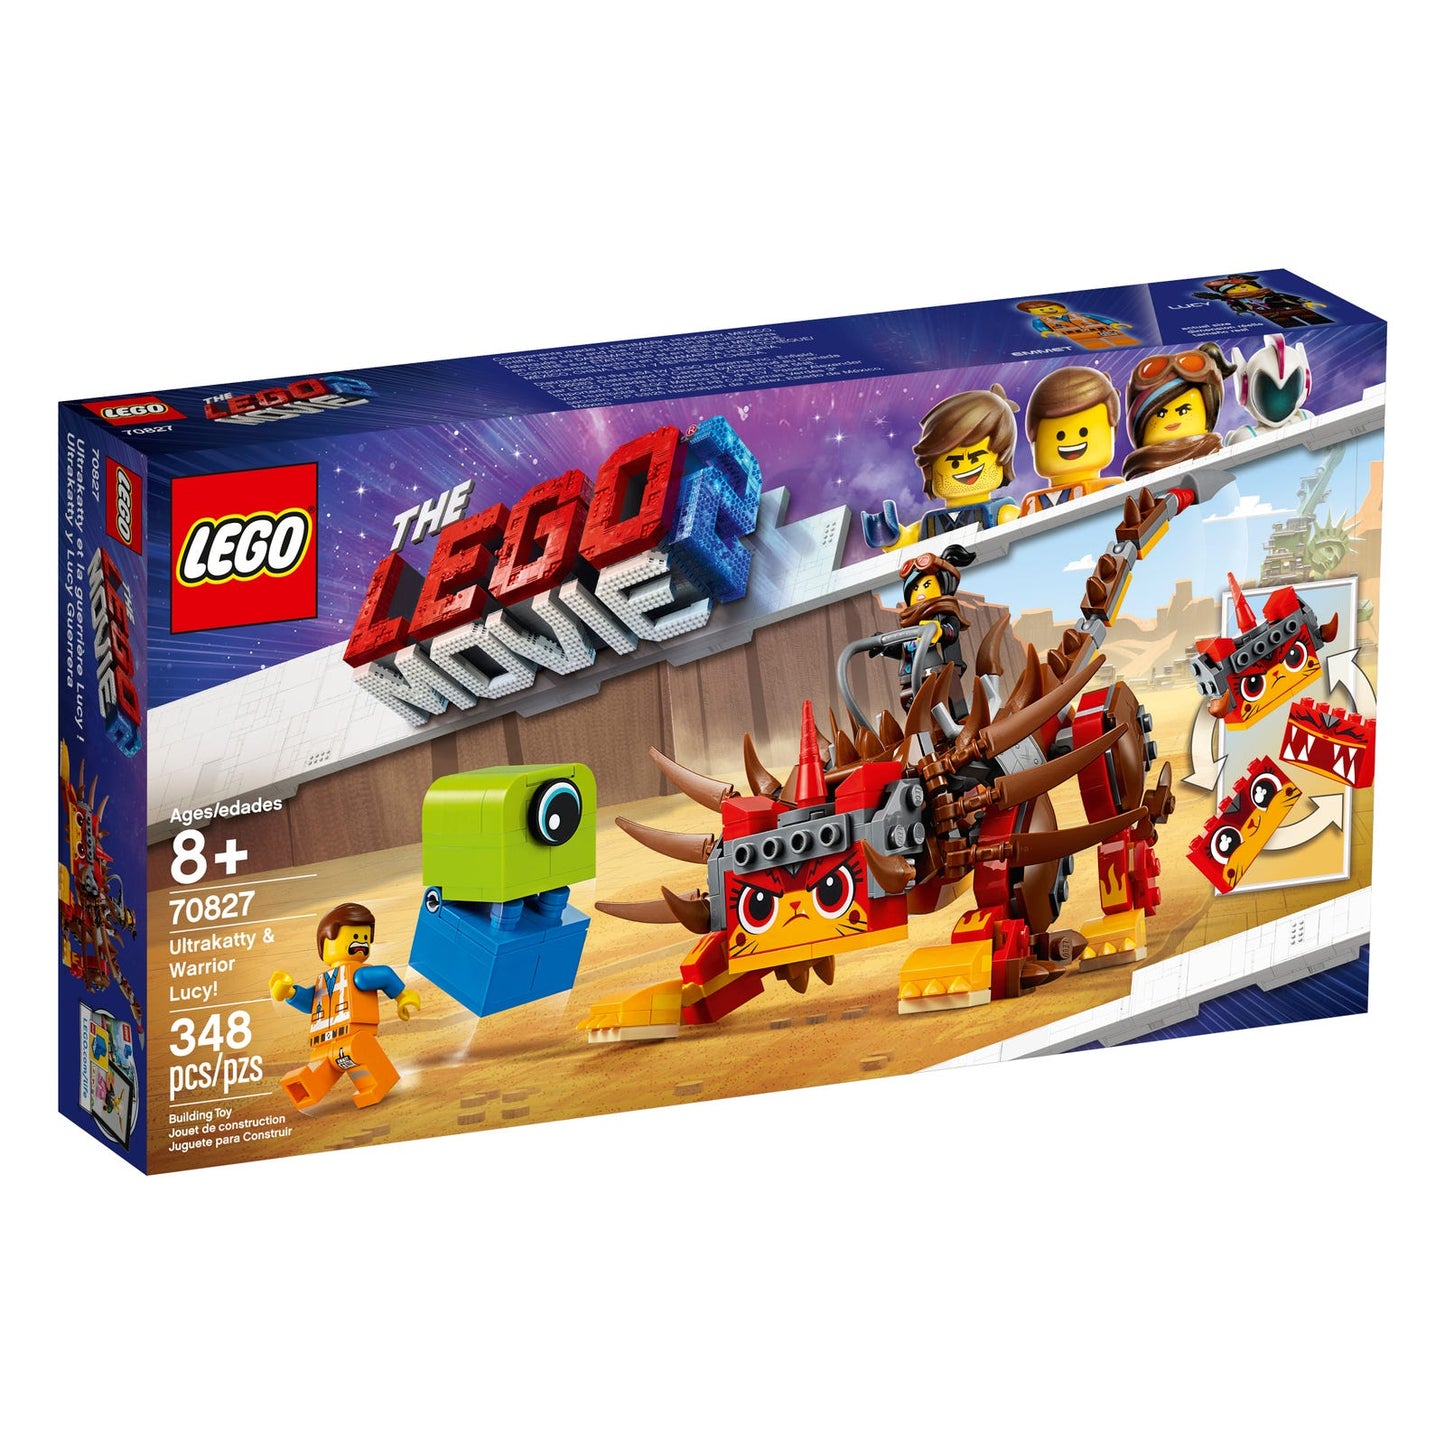 Lego Movie 2 Ultrakatty & Warrior Lucy 70827